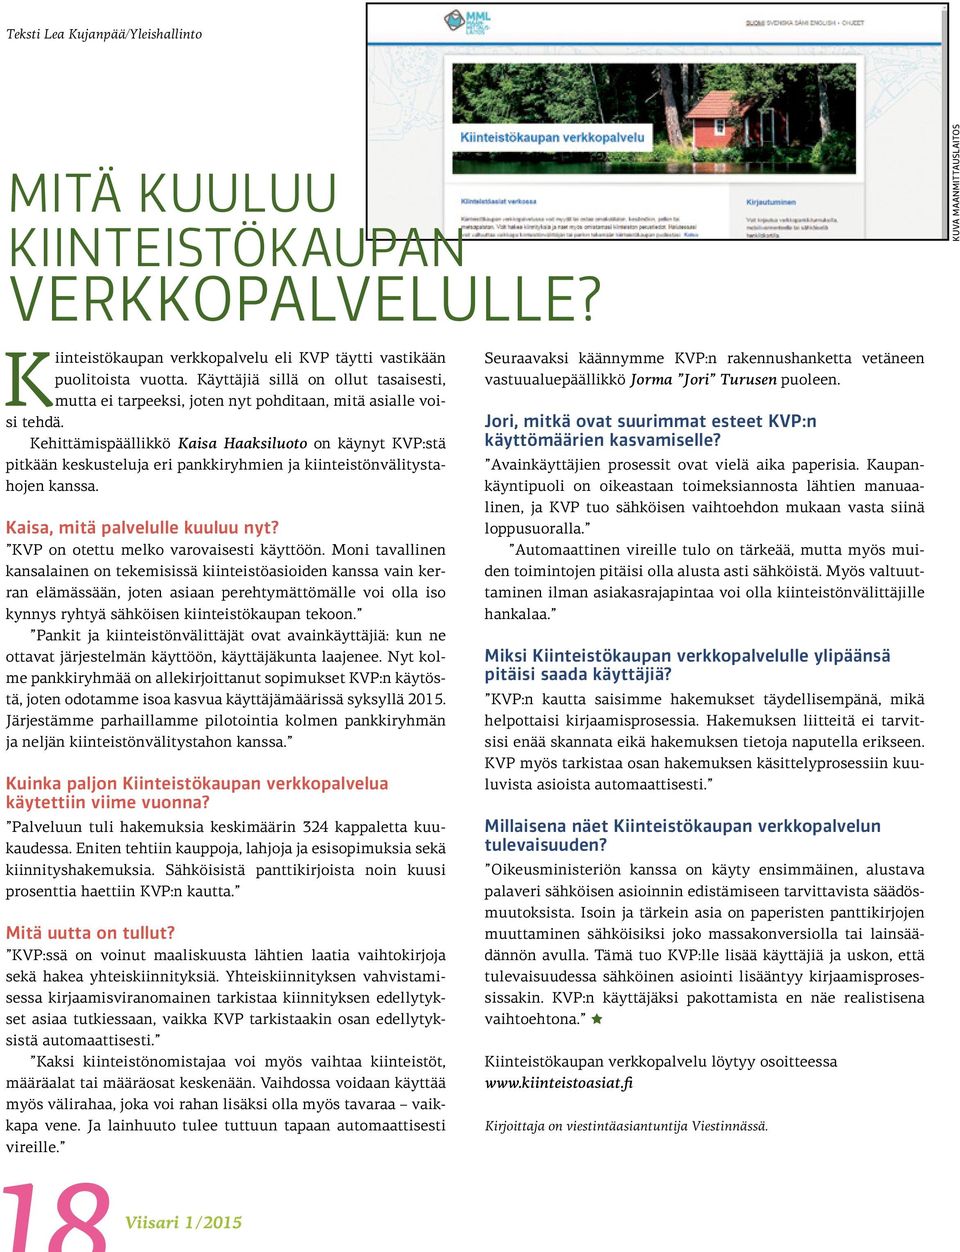 Kehittämispäällikkö Kaisa Haaksiluoto on käynyt KVP:stä pitkään keskusteluja eri pankkiryhmien ja kiinteistönvälitystahojen kanssa. Kaisa, mitä palvelulle kuuluu nyt?